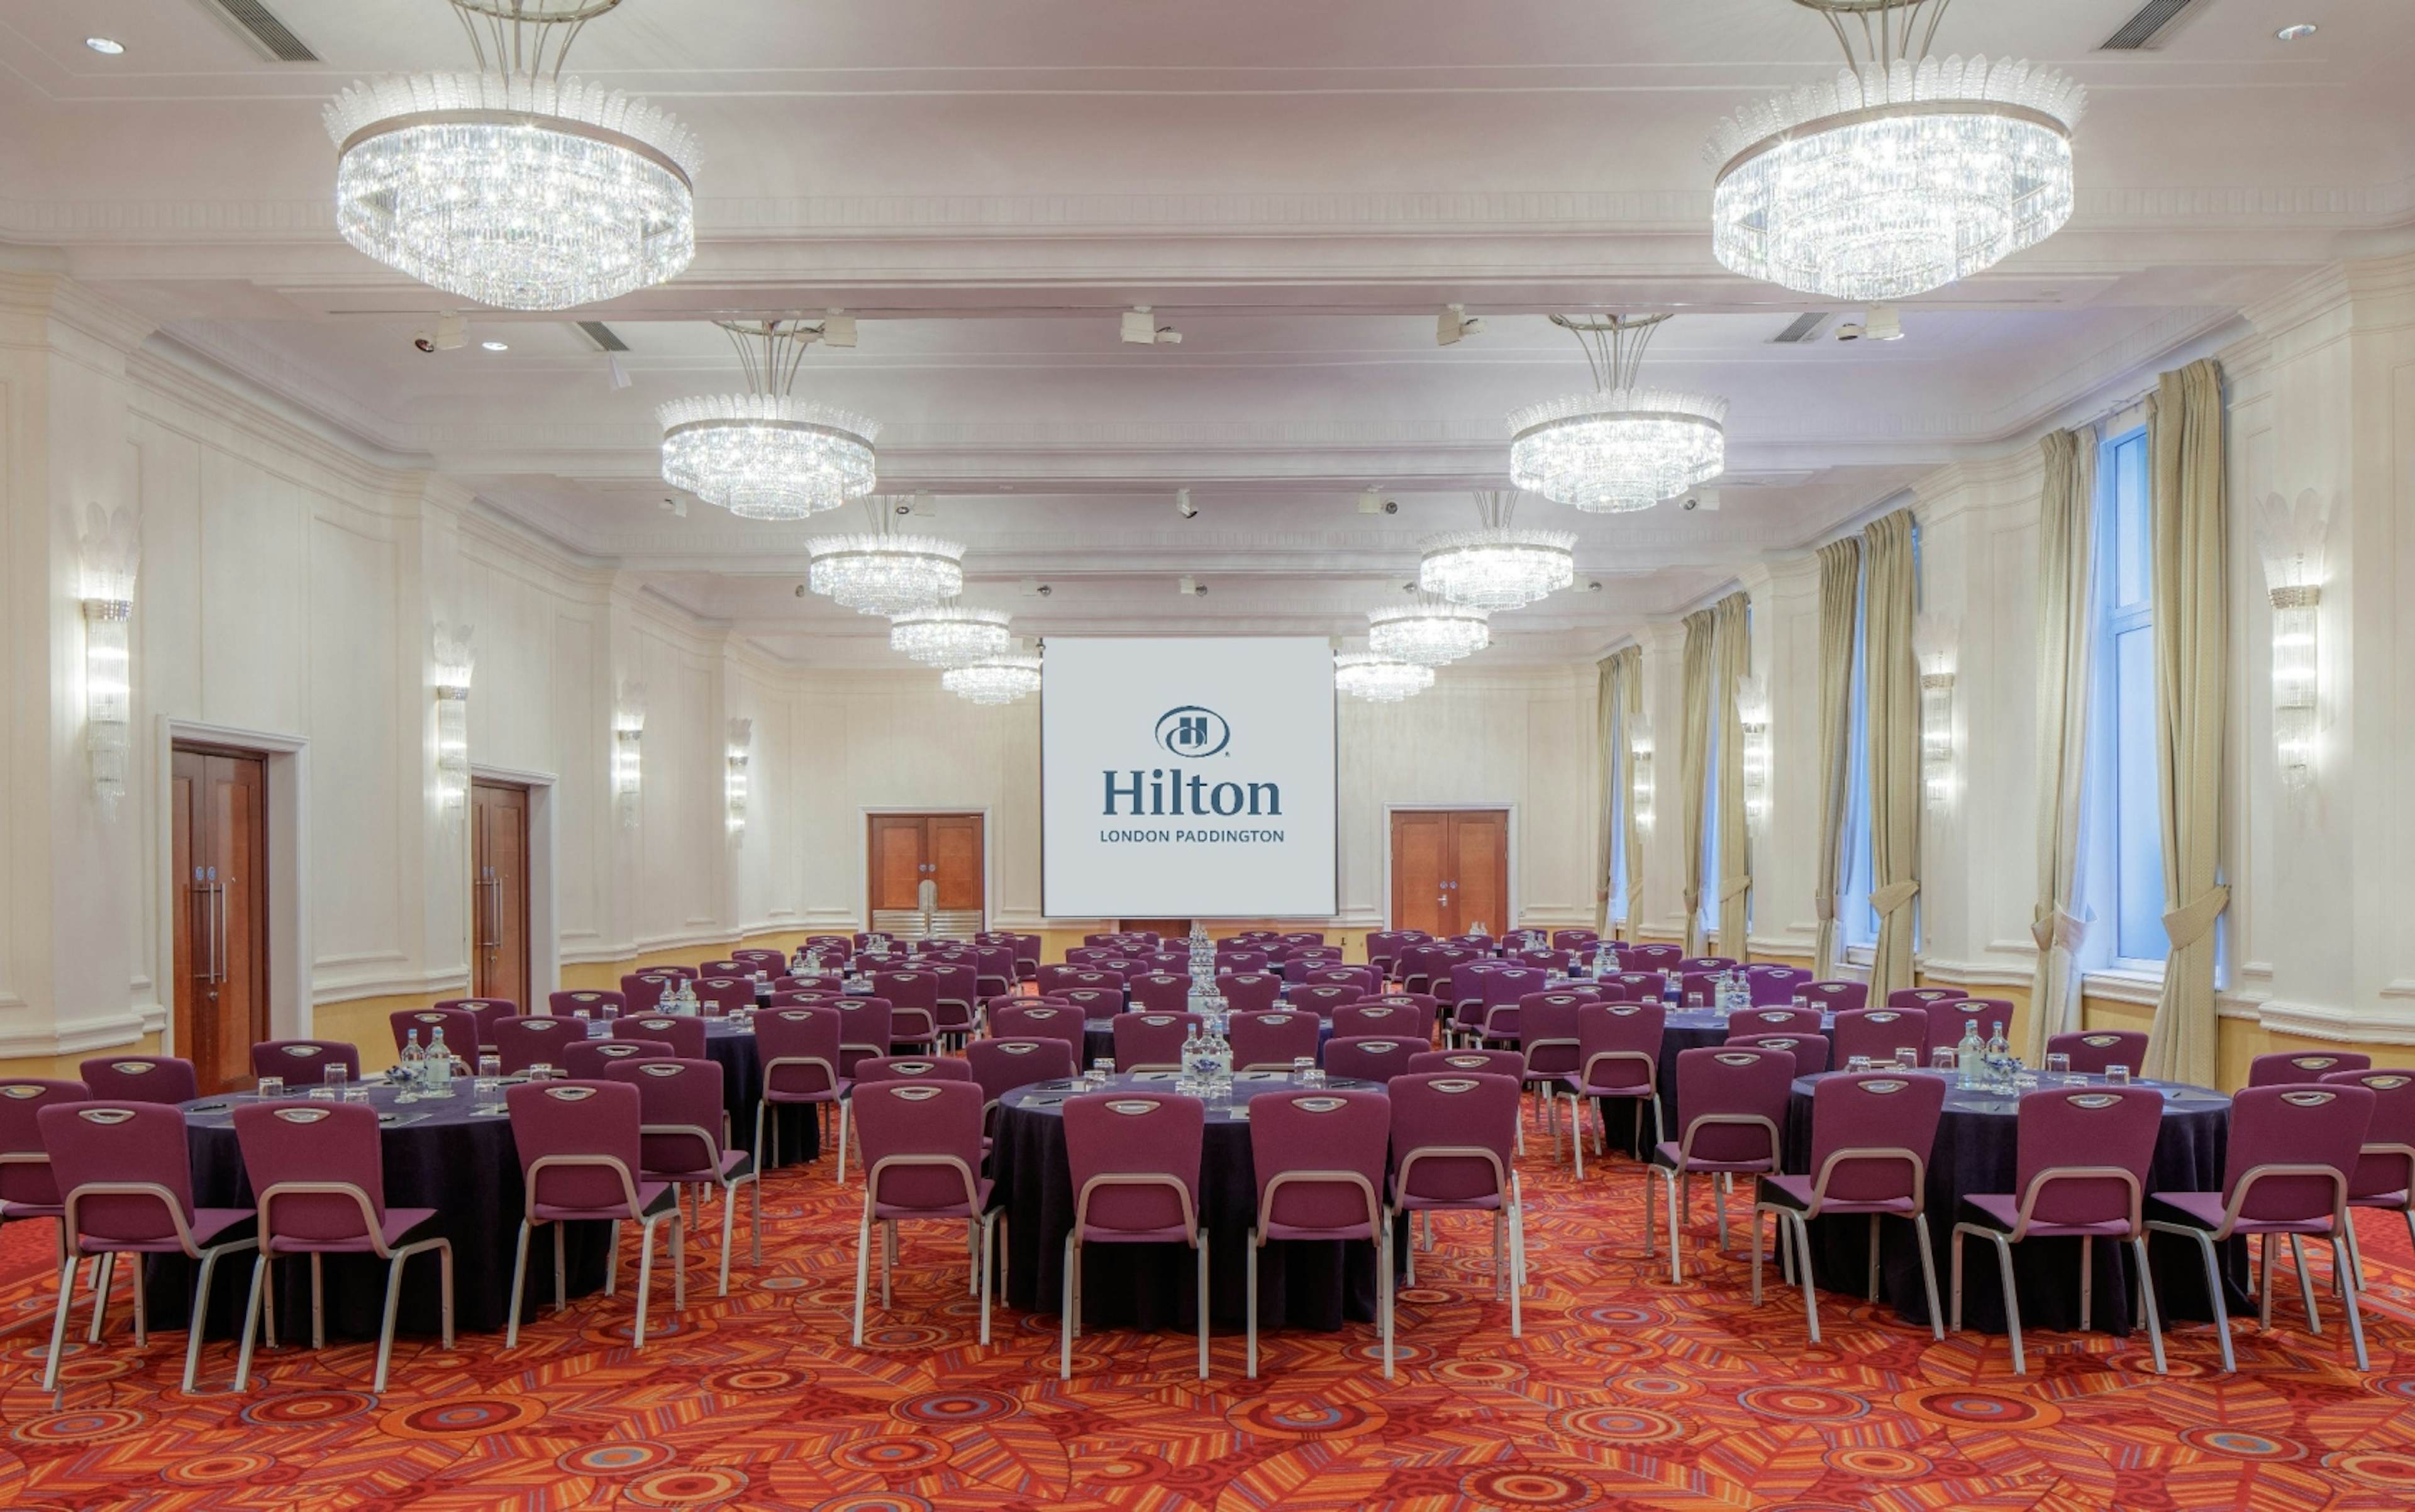 Hilton London Paddington - image 1